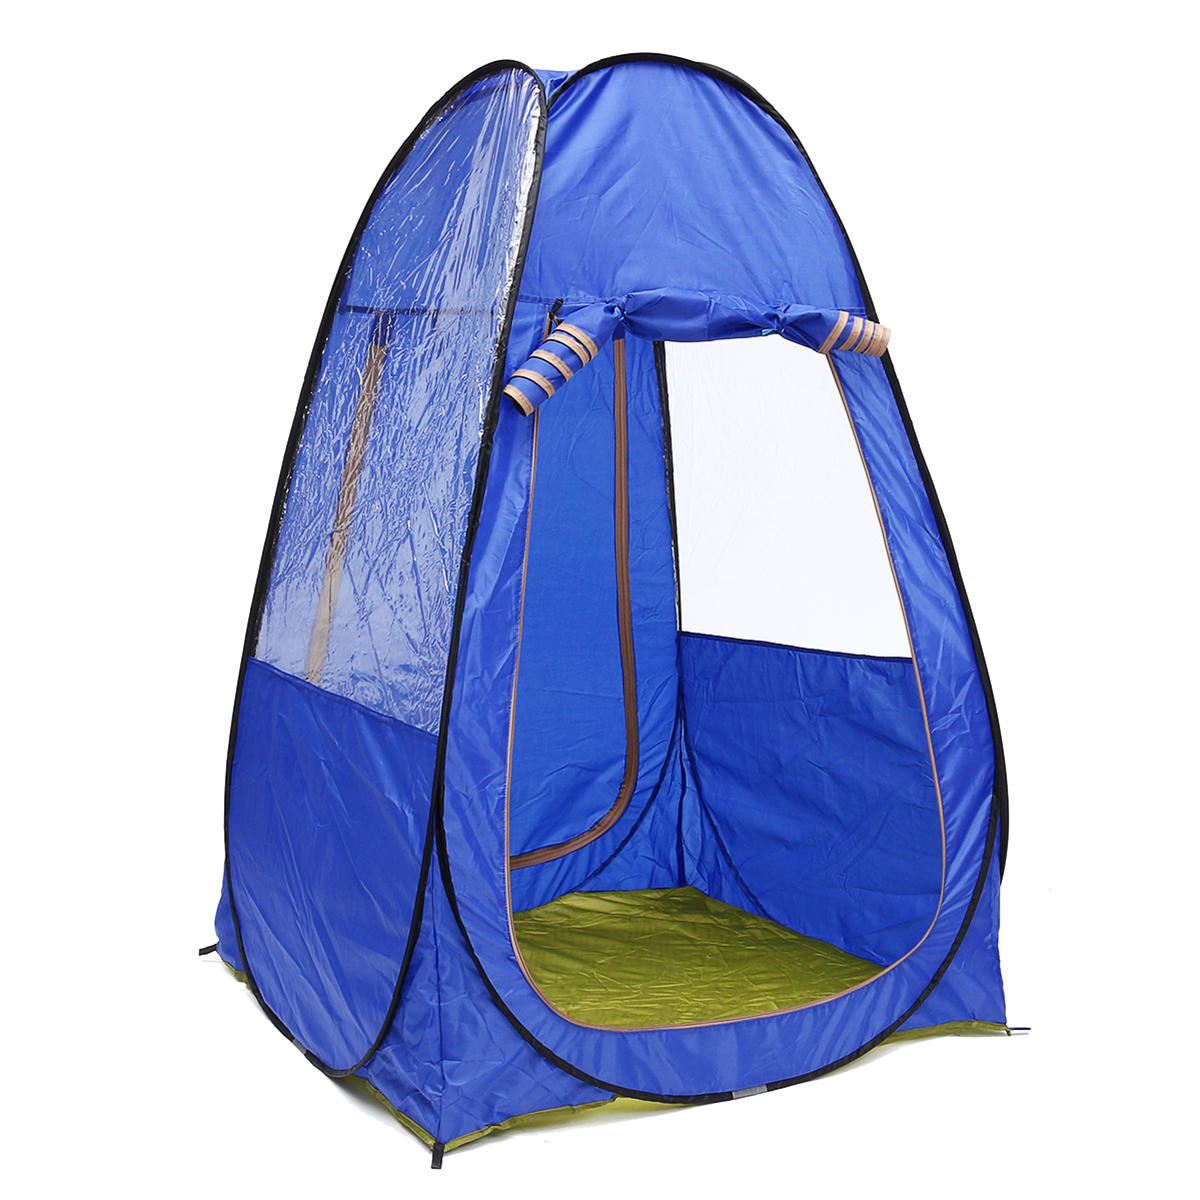 1〜2人用のポータブルキャンプテント、折りたたみ式、UVプルーフ、防水、日よけ付き